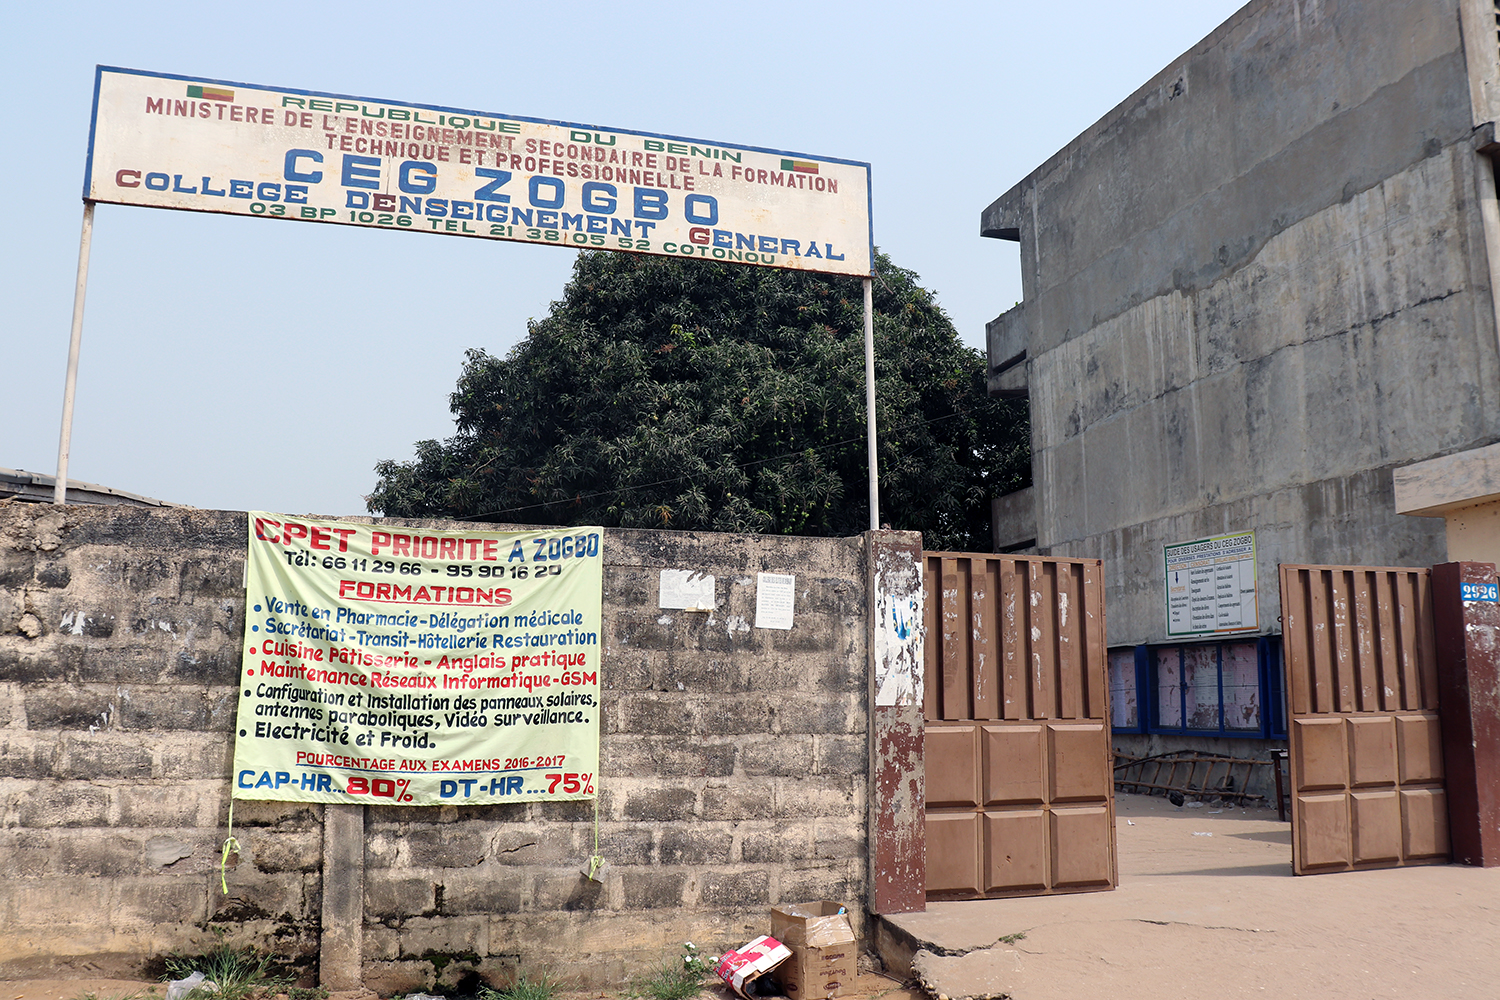 Entrée principale du collège d’Enseignement général Zogbo, situé dans le 9ème arrondissement de Cotonou.